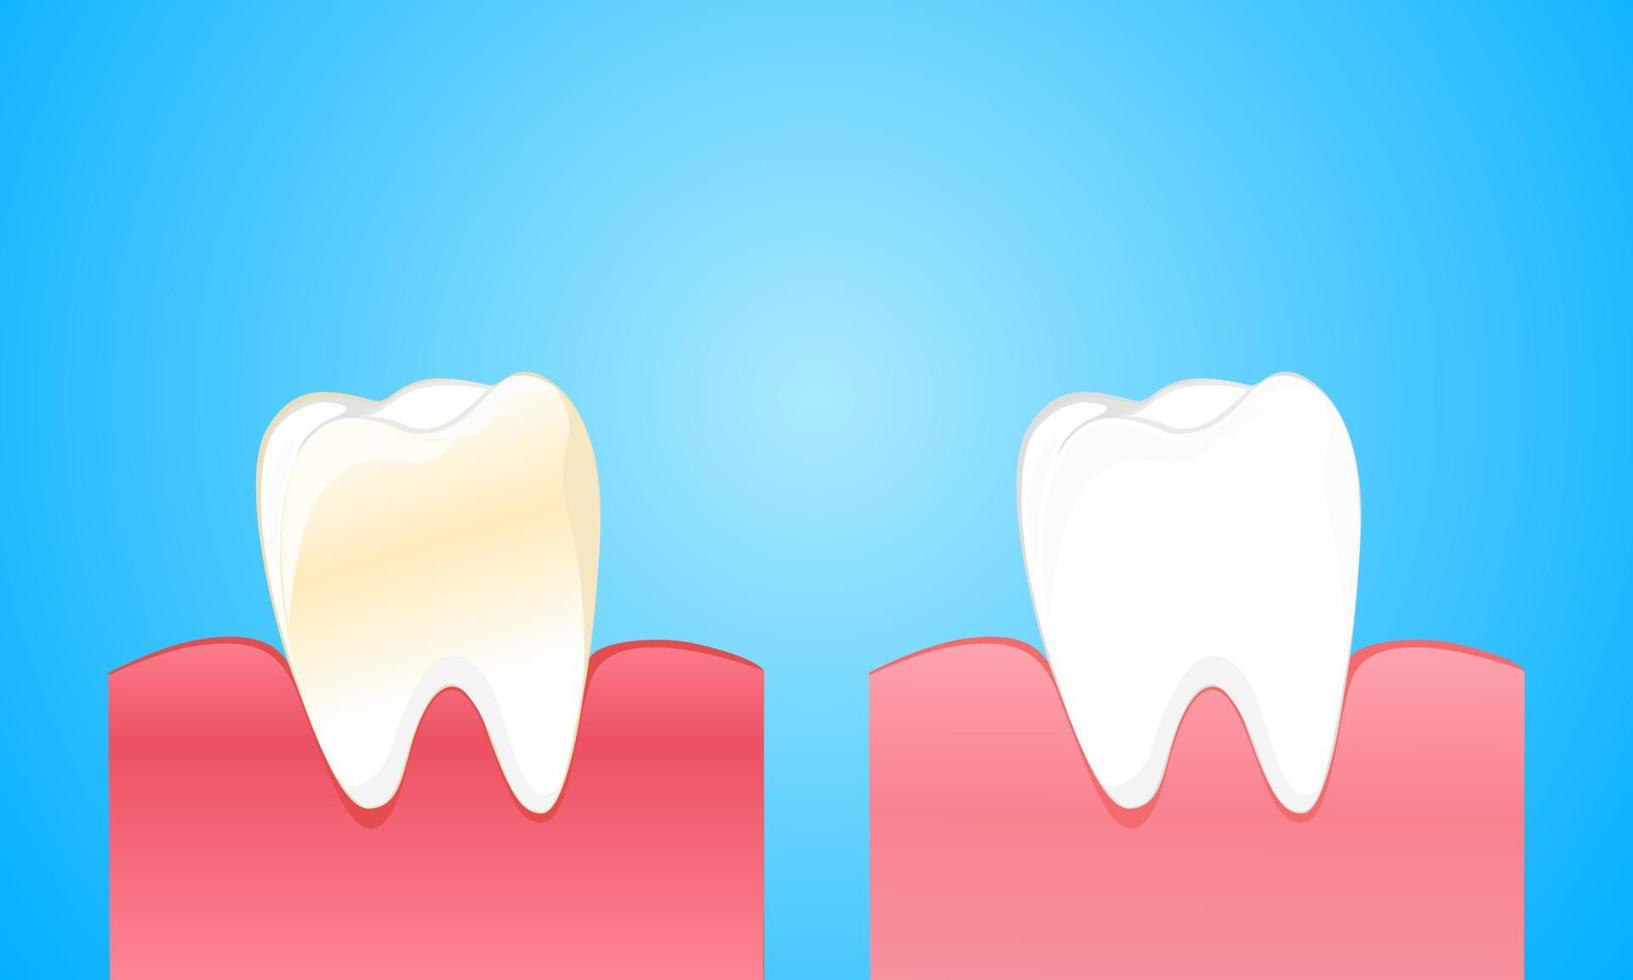 dente e gengiva sujos comparam com dente branco limpo e forte vetor